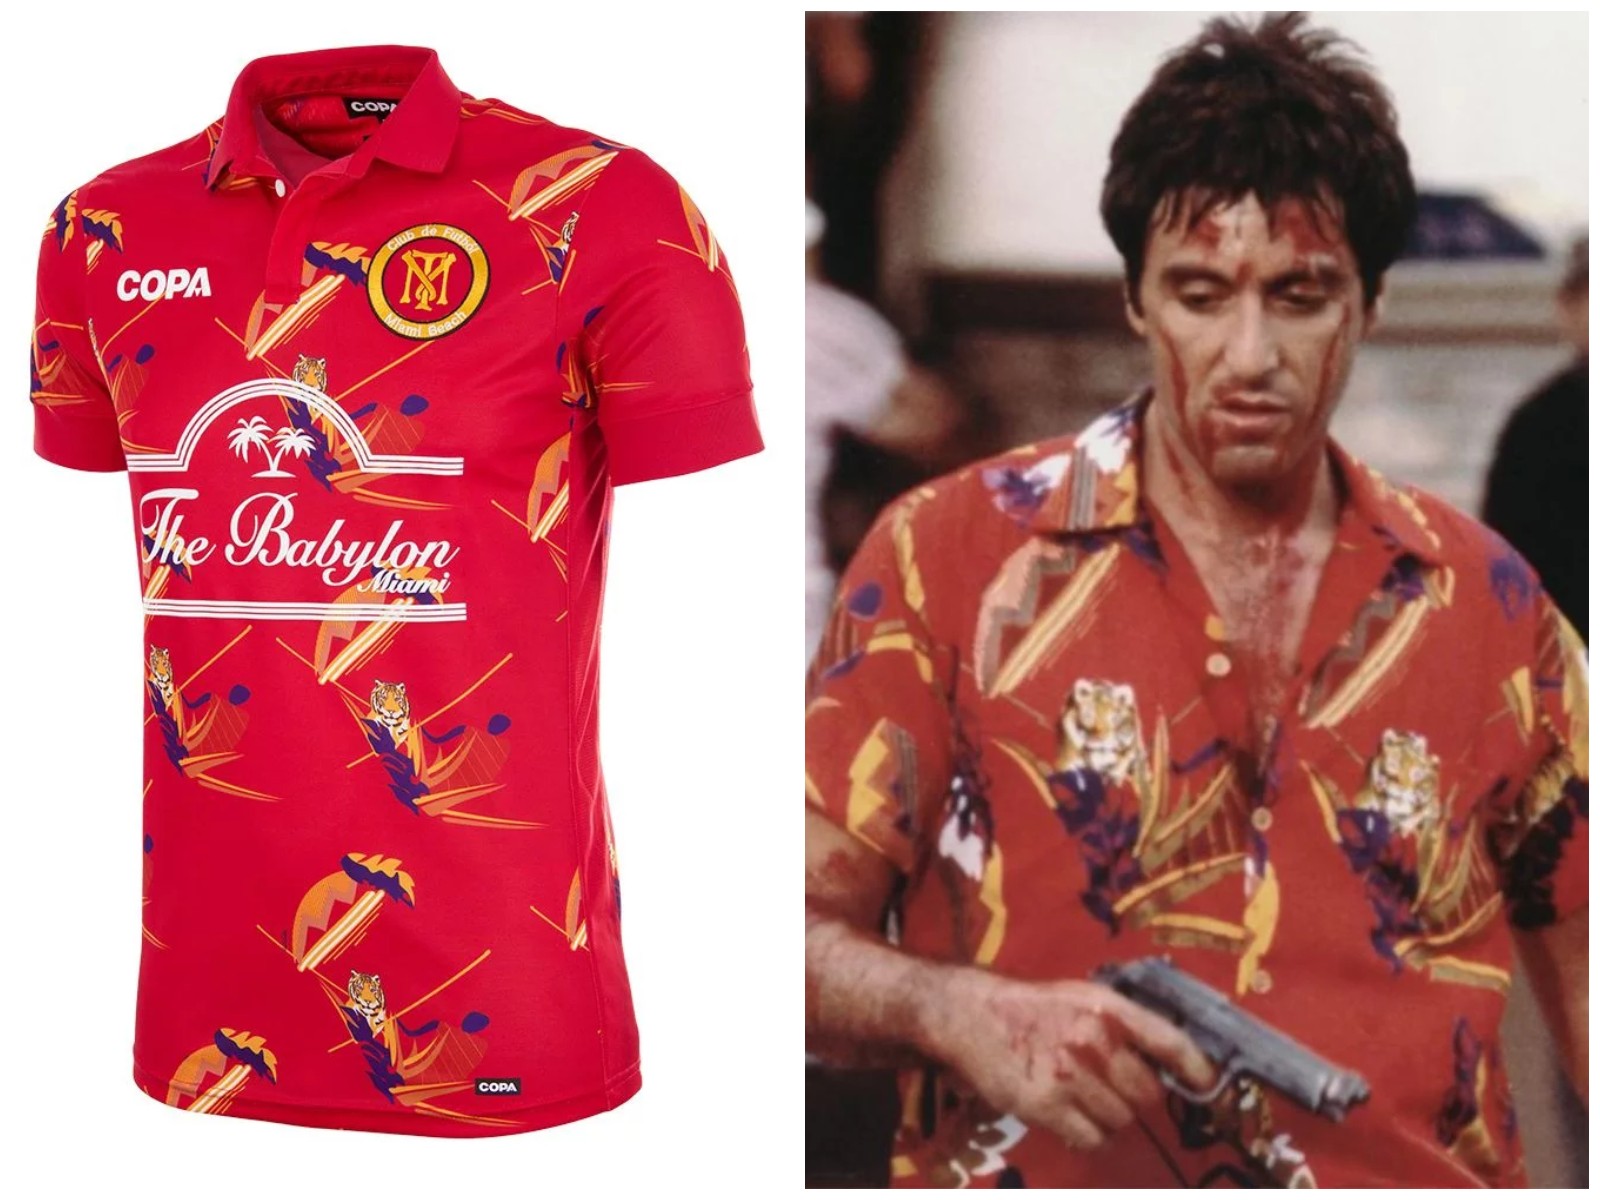 Camisa de futebol da COPA com estampa inspirada no figurino de Tony Montana, interpretado por Al Pacino, de Scarface (Foto: Reprodução)